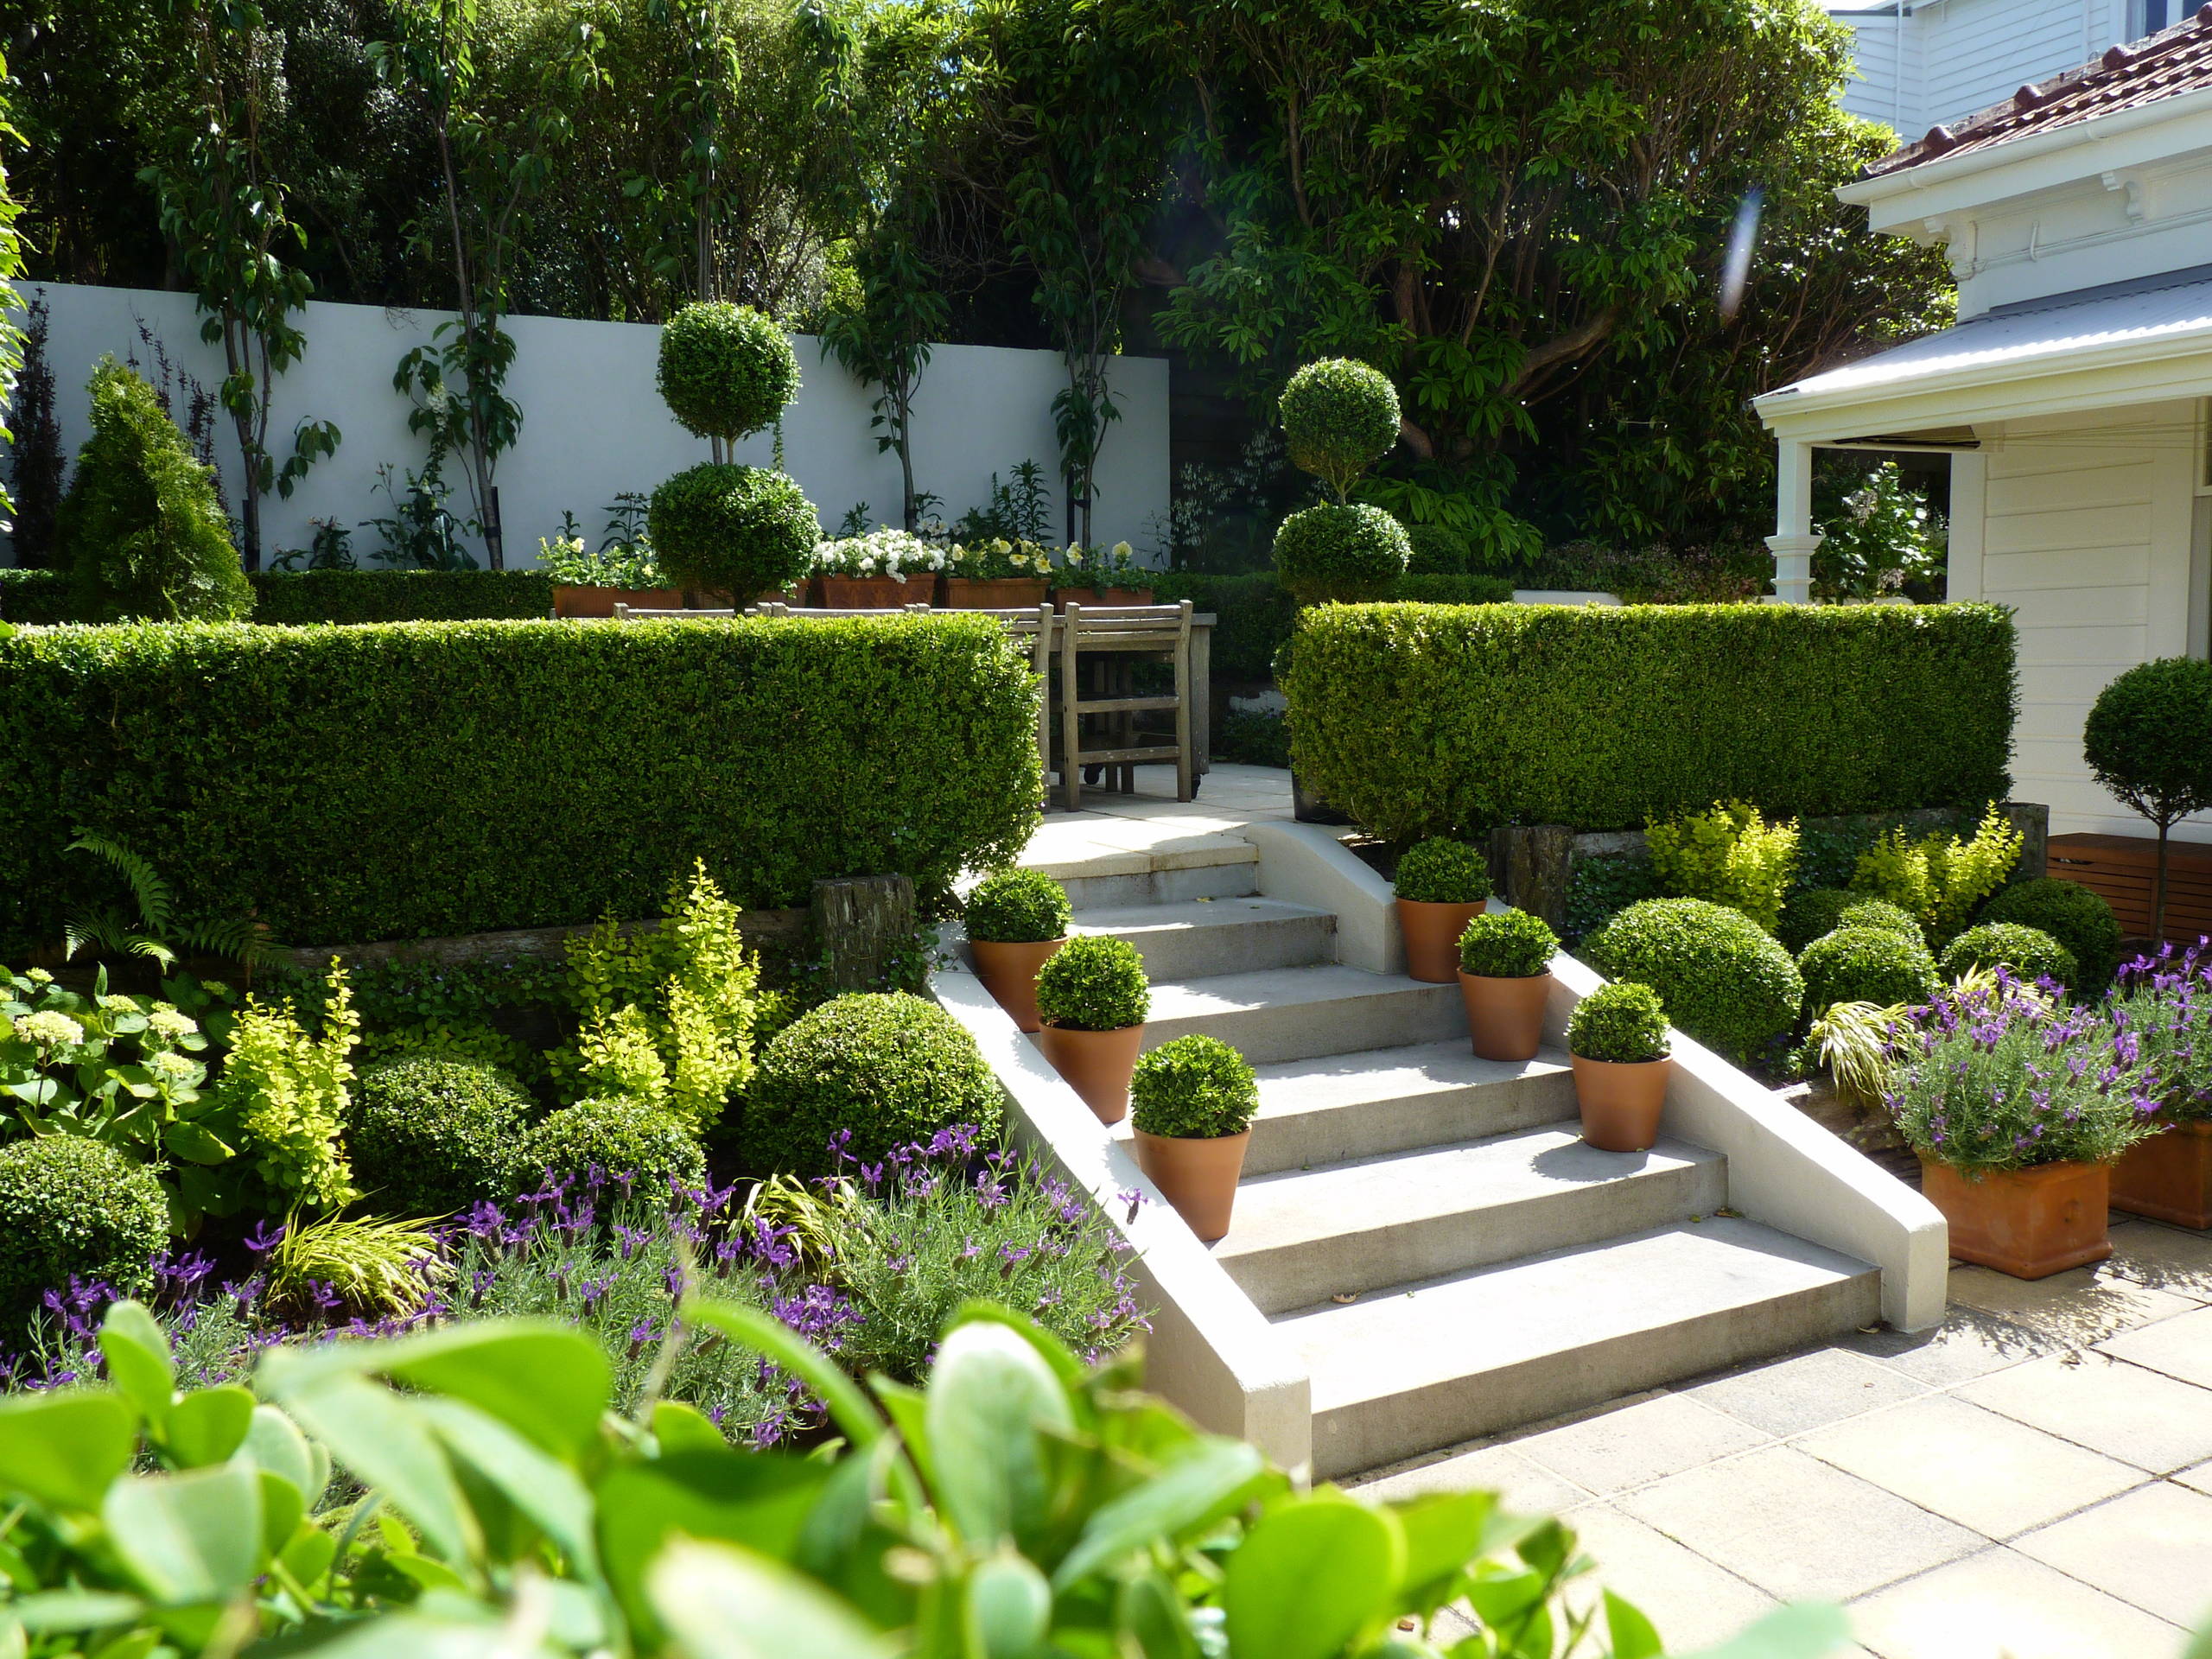 Kelburn An Elegant Garden For A, Elegant Gardens Landscaping